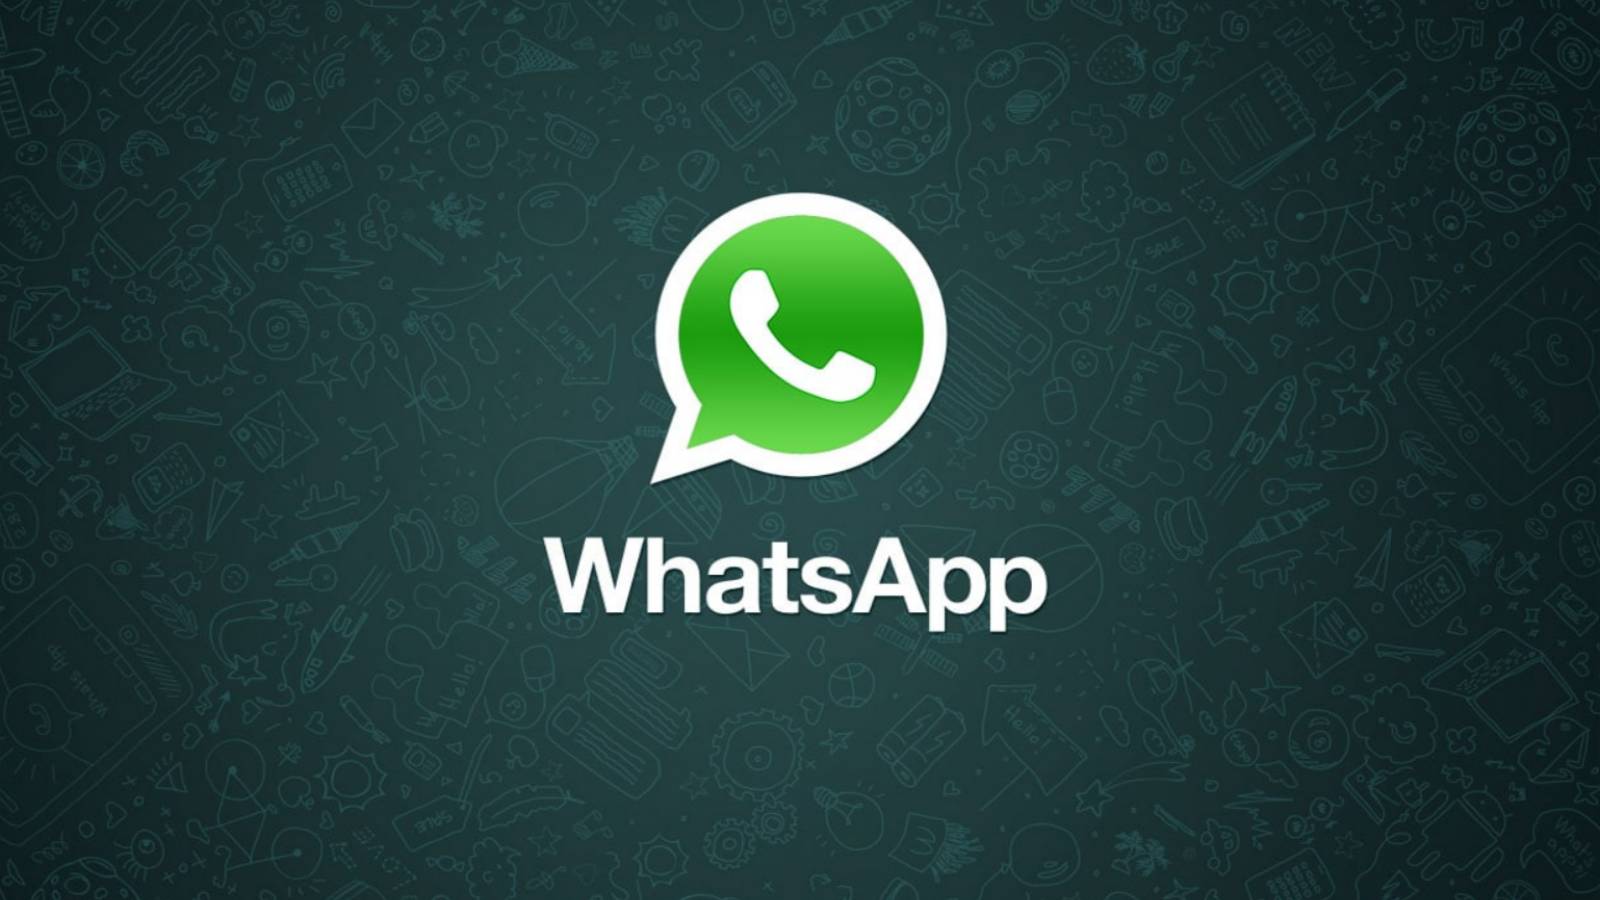 WhatsApp integrare